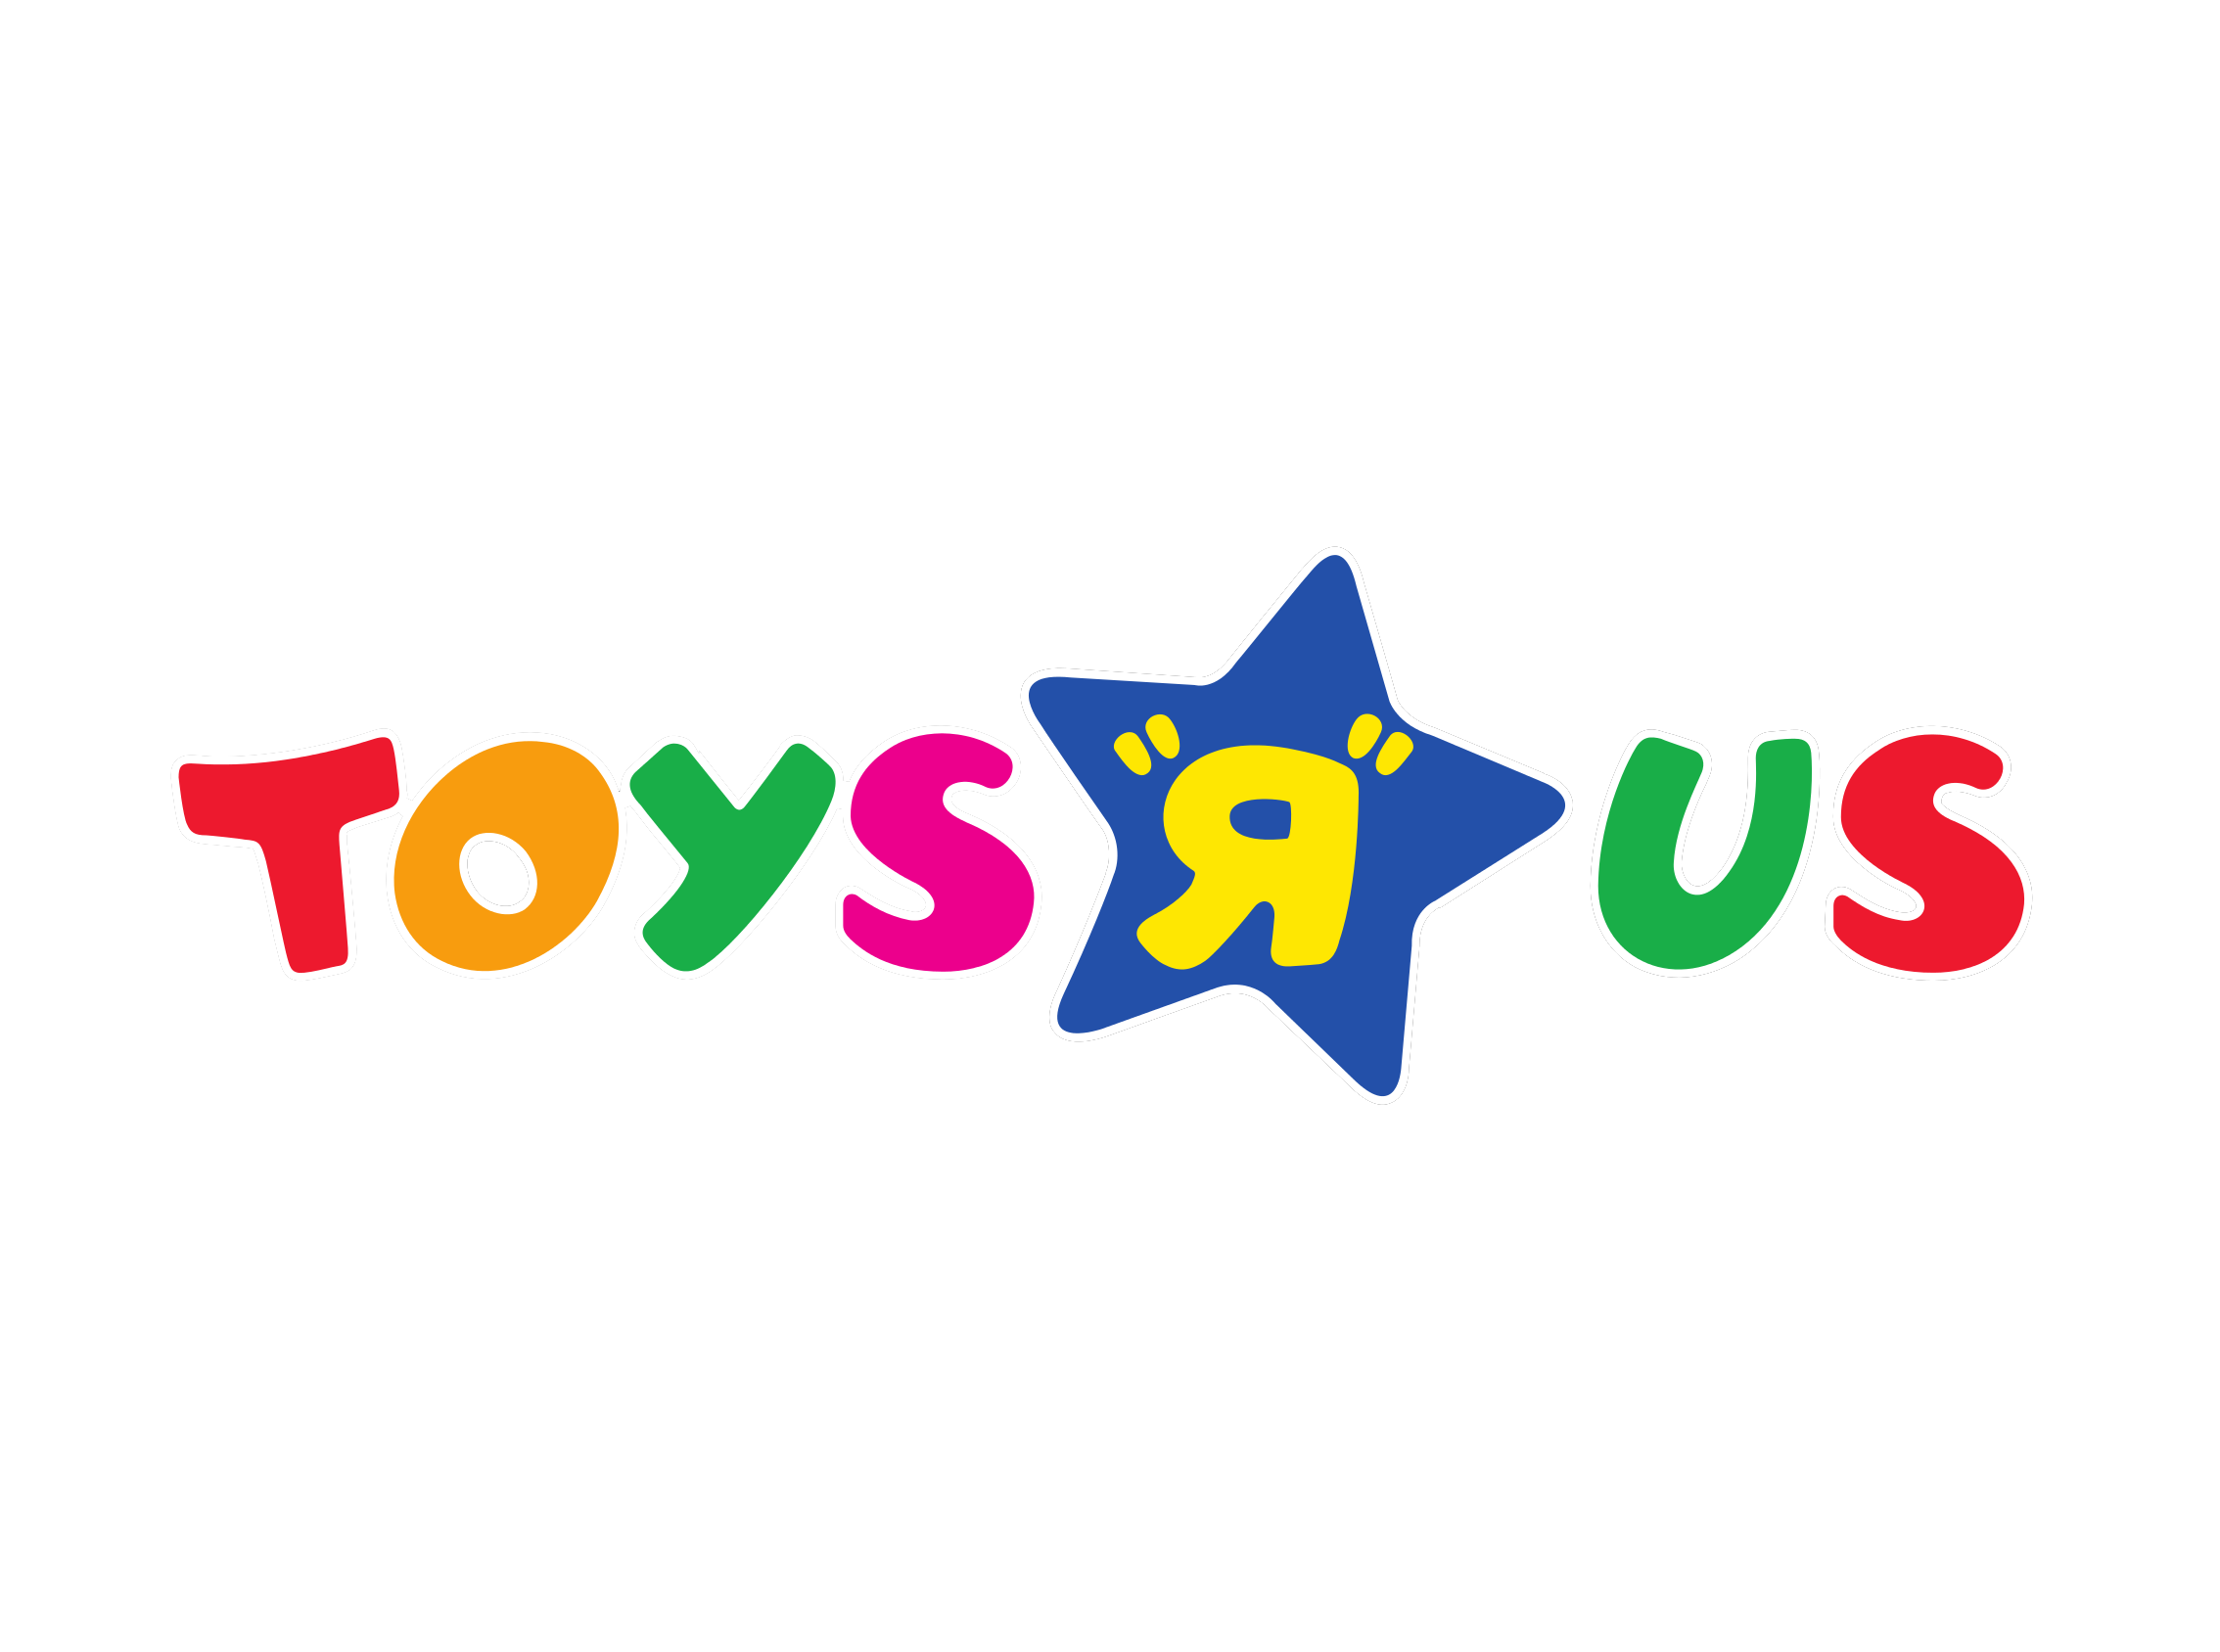 Тойс фо. Магазин игрушек Toys r us. Логотип игрушек. Логотип магазина детских игрушек. Логотип TOYSRUS.